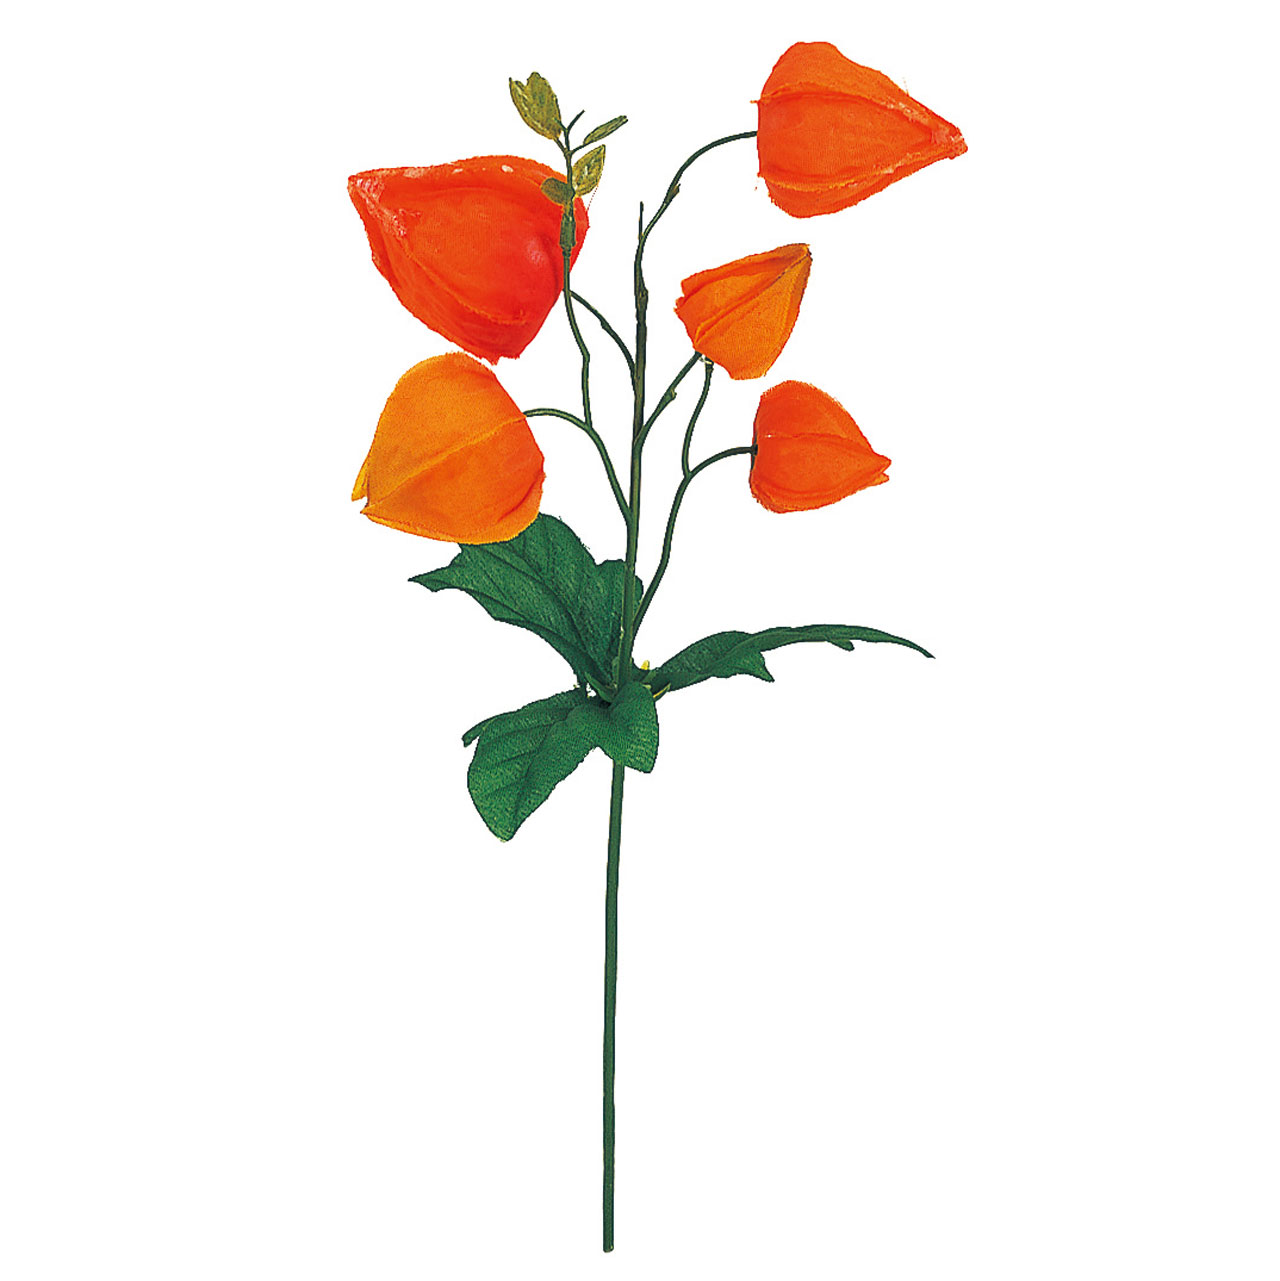 マイフラ 通販 Magiq ホオズキピック オレンジ アーティフィシャルフラワー 造花 鬼灯 Fm0011 実の直径 約2 5 4 全長 約25cm オレンジ Magiq アーティフィシャルフラワー 造花 全国にmagiq 花器 花資材などをお届けします